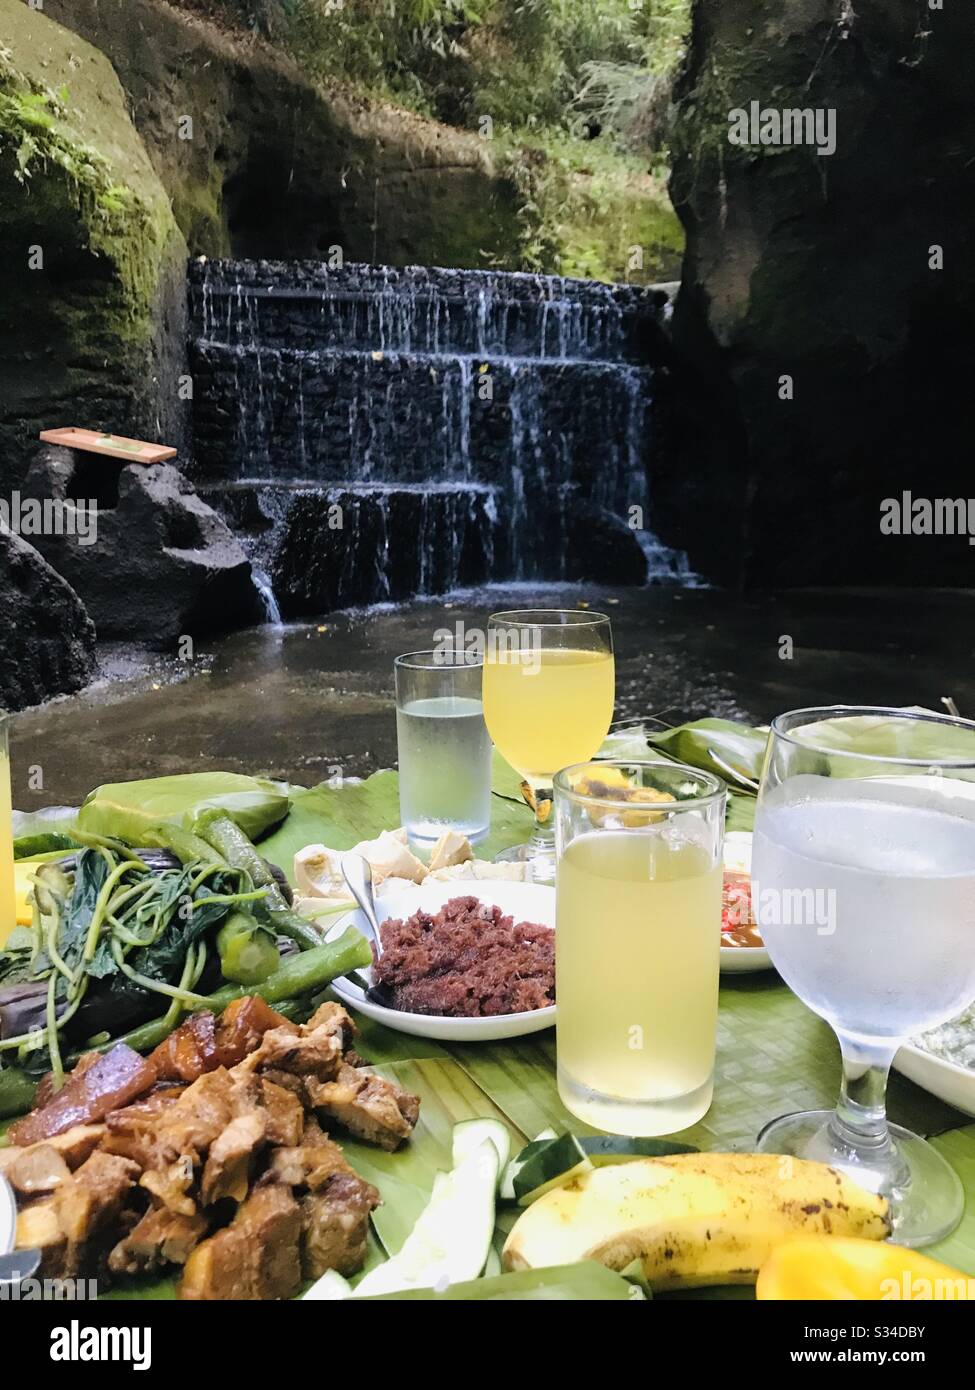 Une expérience culinaire magique dans une rivière naturelle de printemps au Sonya’s Garden, Philippines. La nourriture philippine est à son meilleur. Banque D'Images